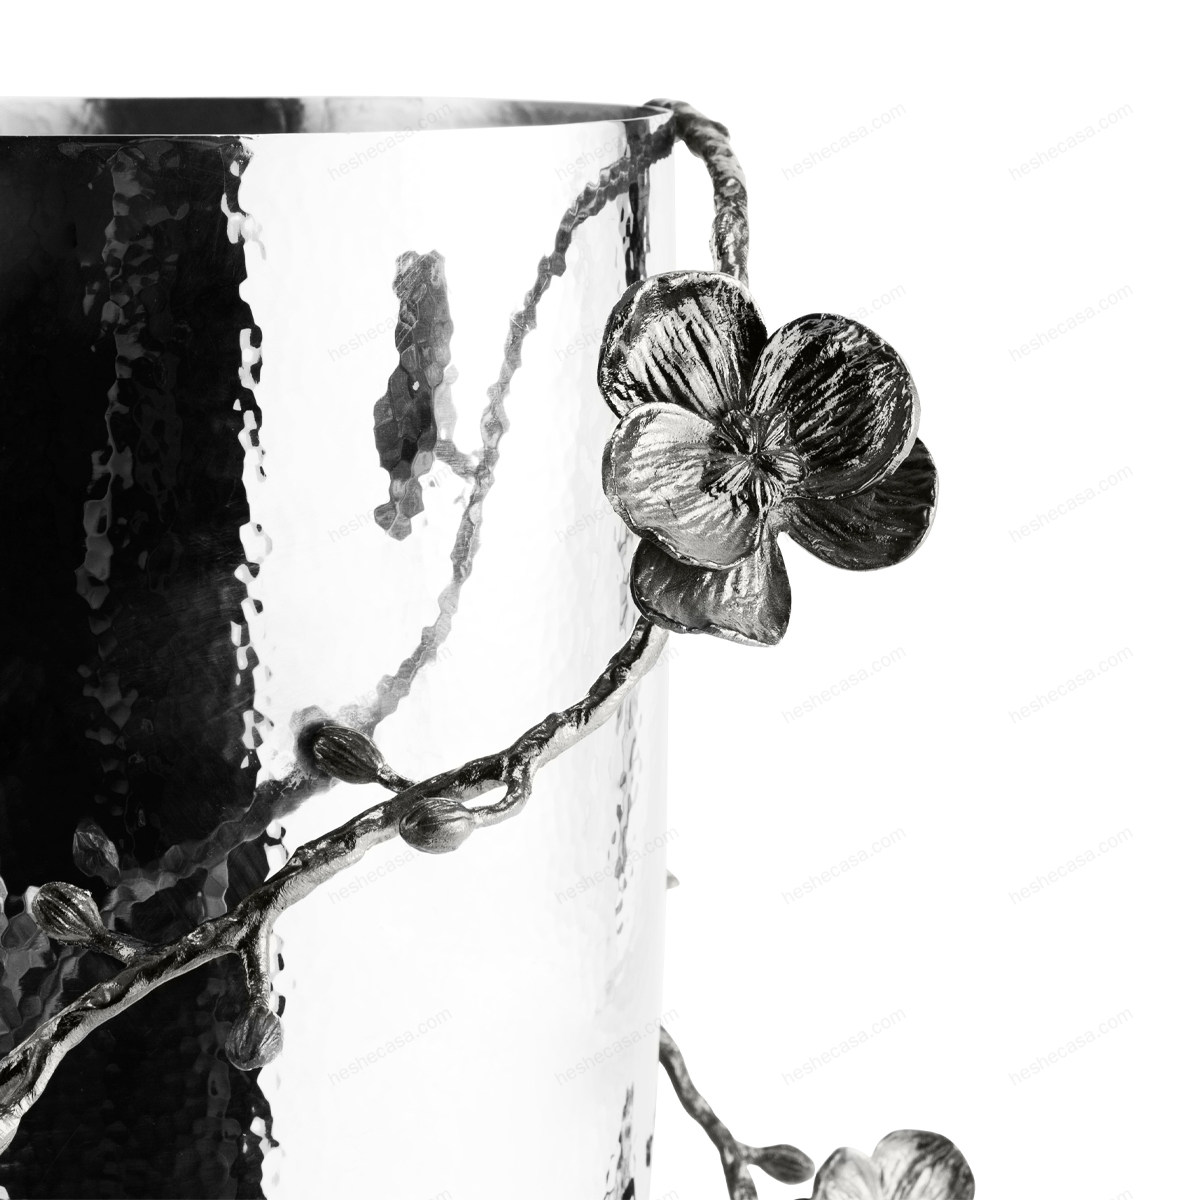 Black Orchid Centerpiece Vase花瓶